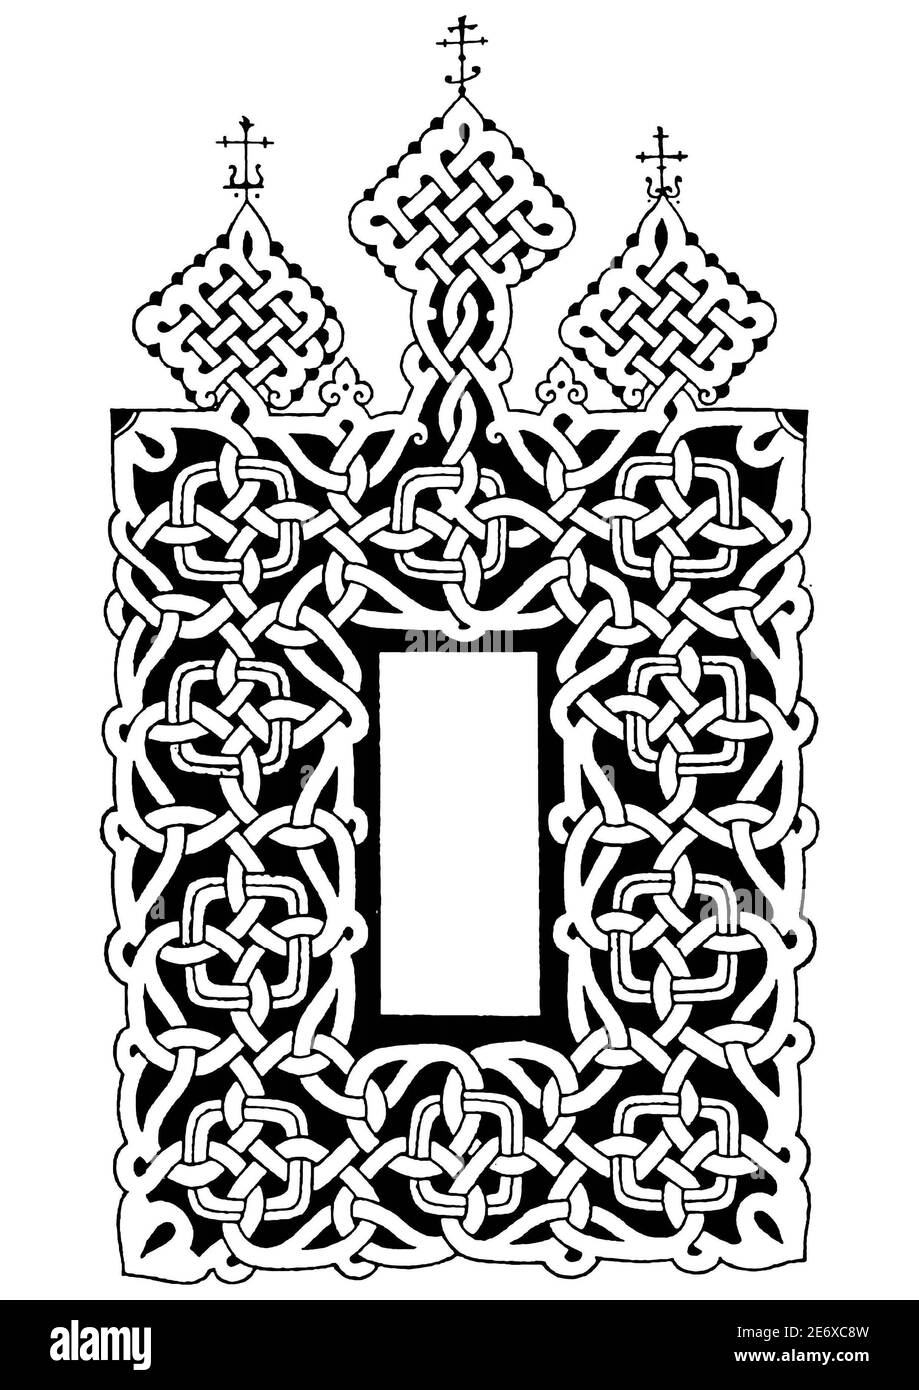 Древнерусская вязь древнерусский орнамент